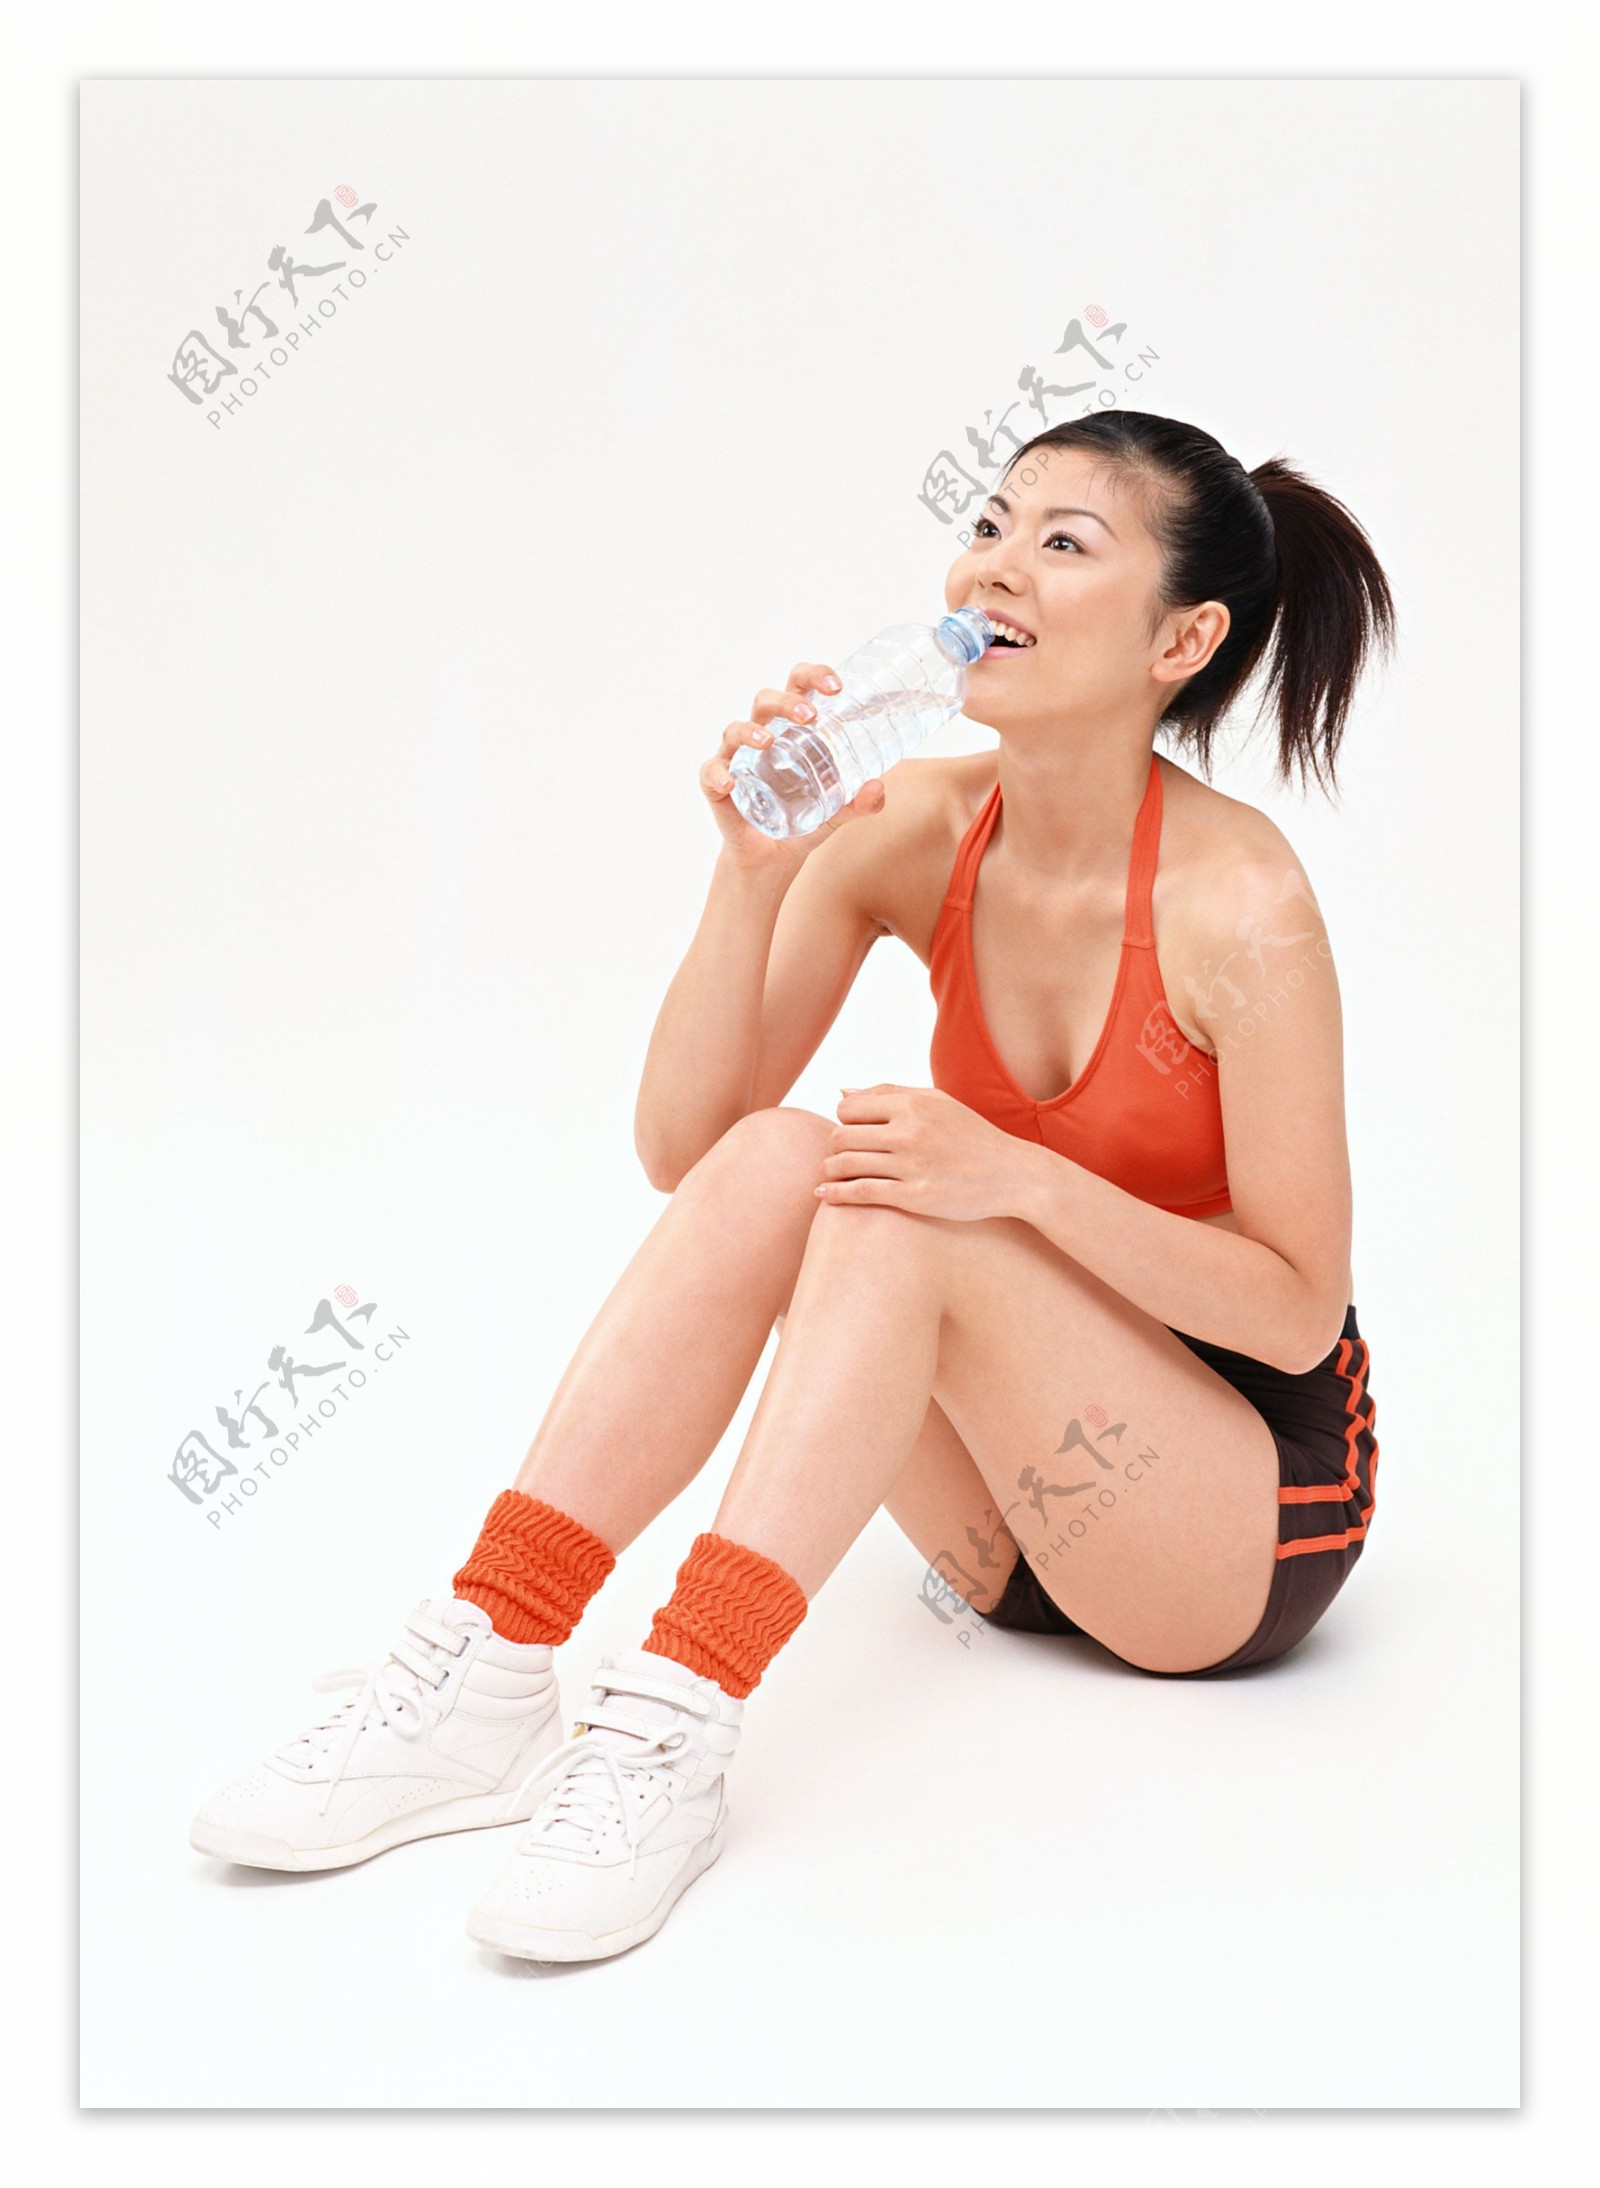 喝水的健身女性图片